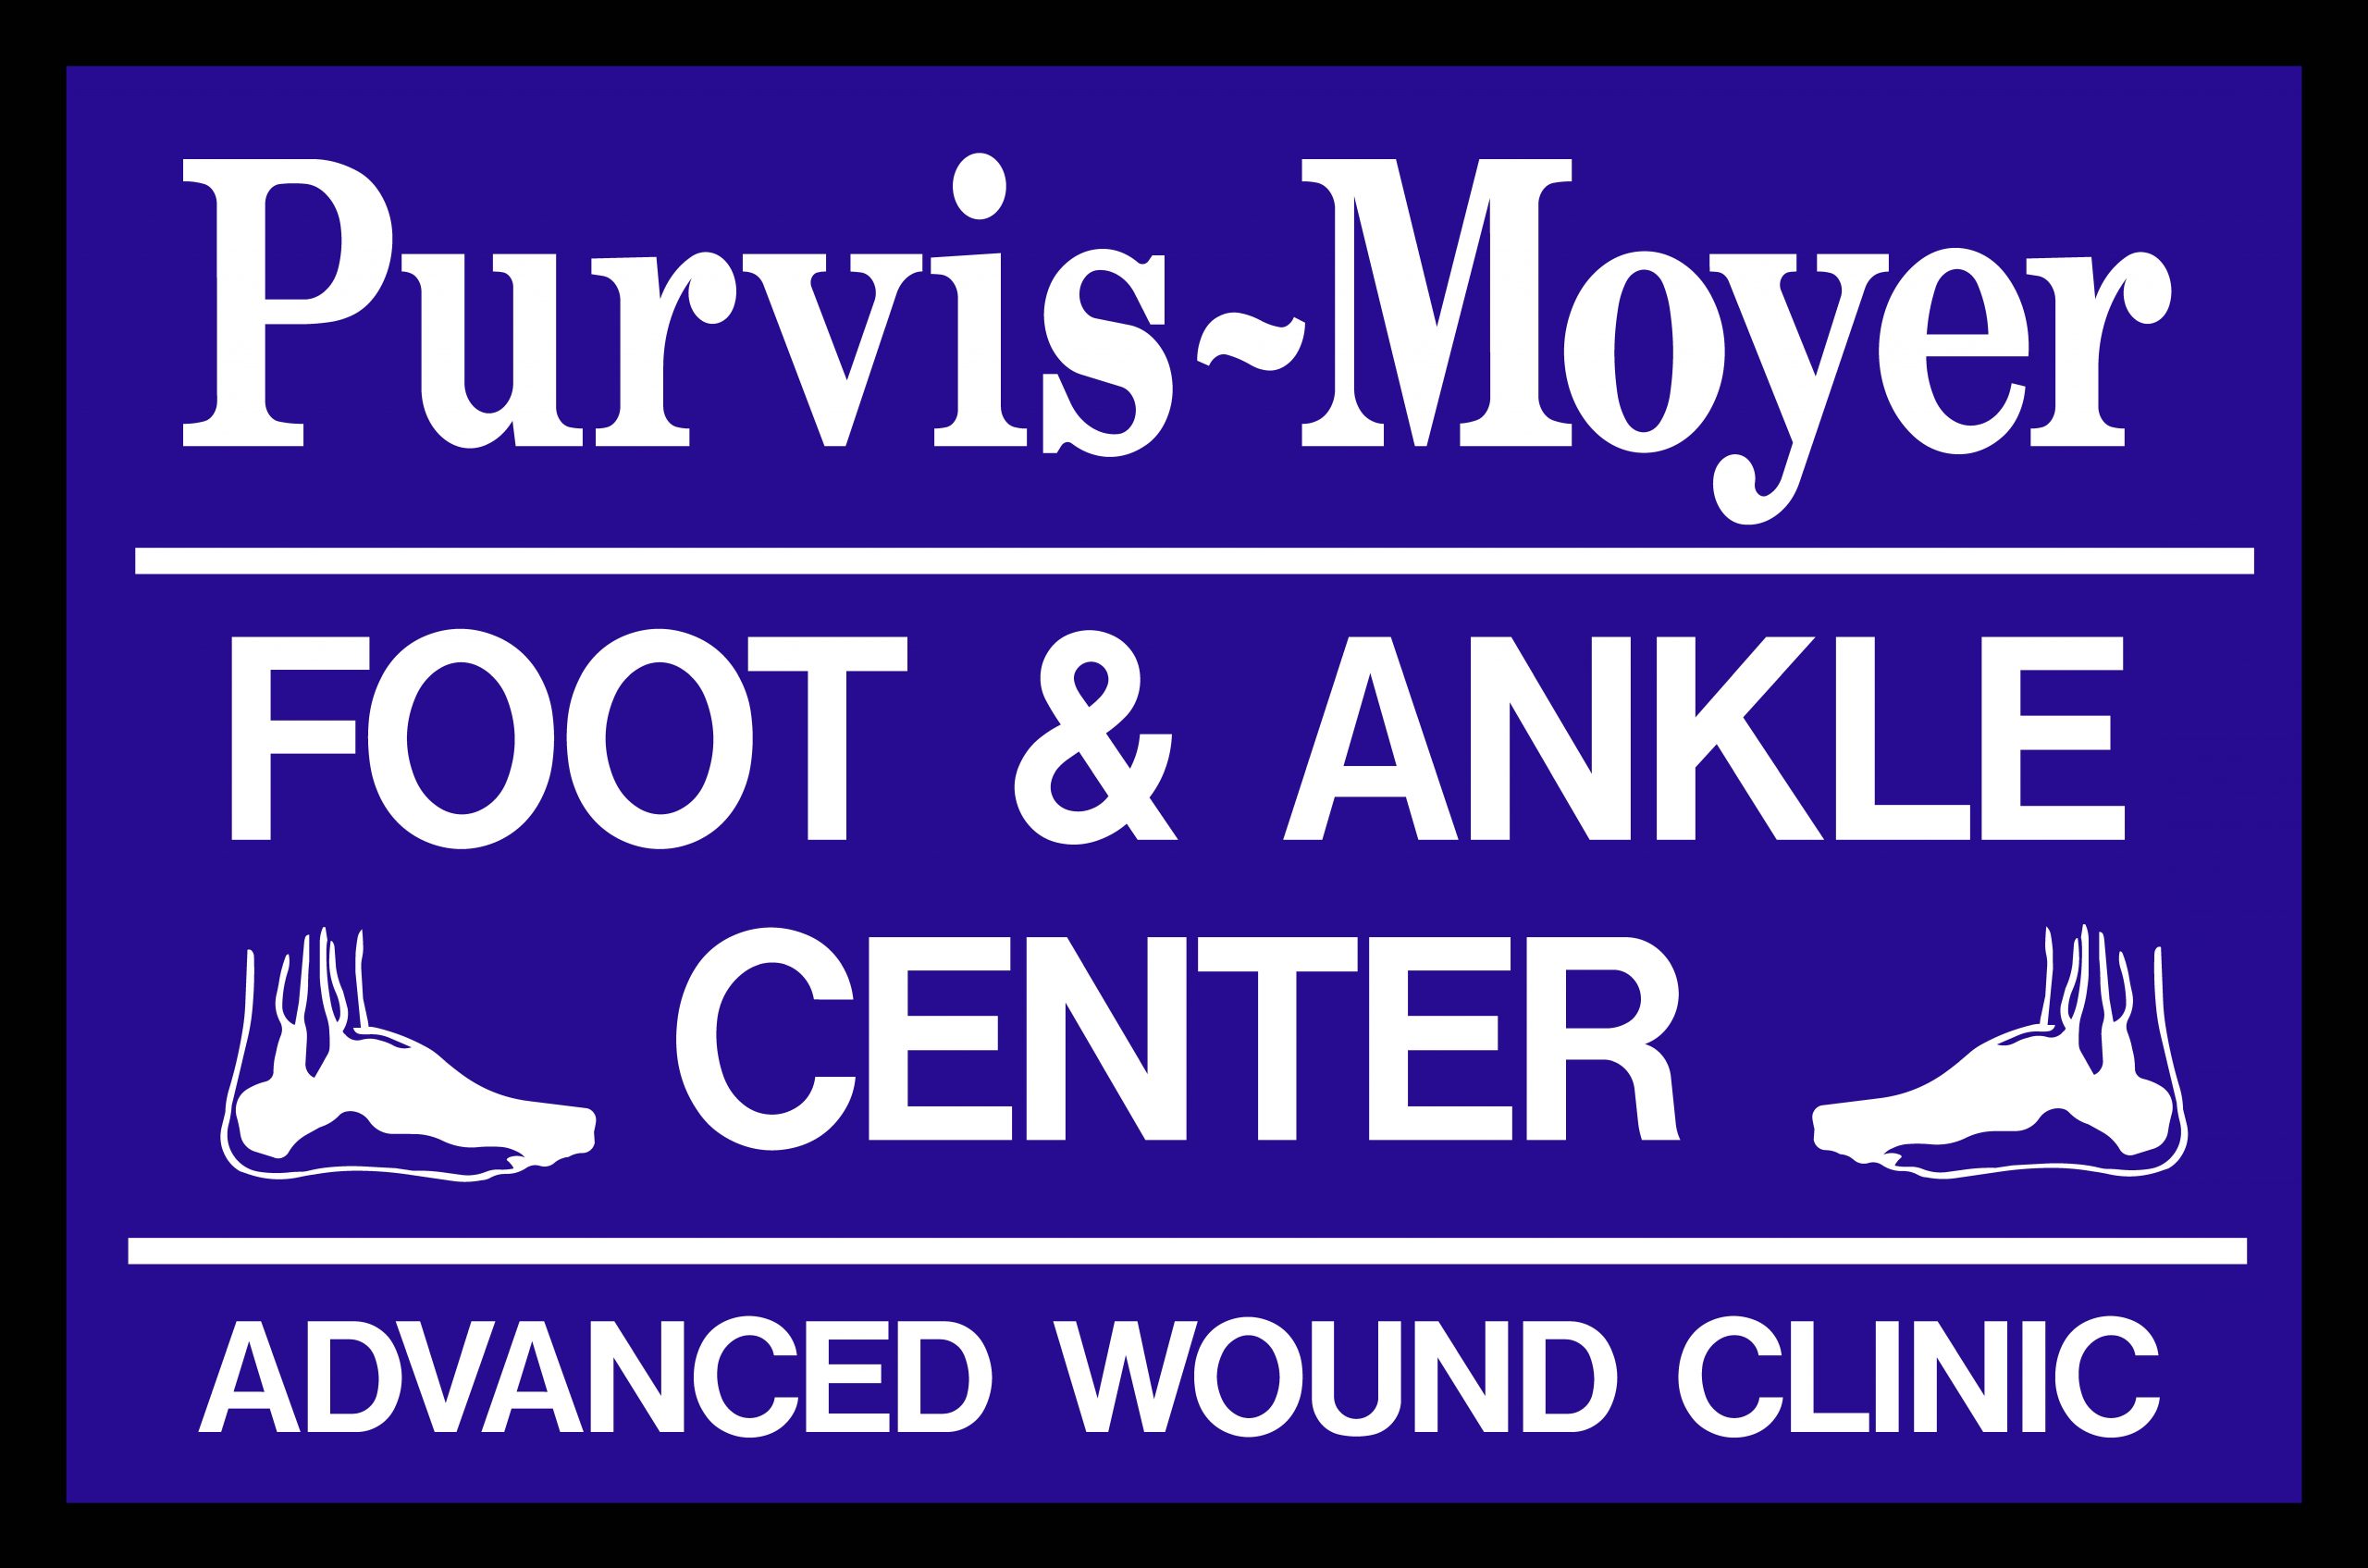 Sponsor Purvis-Moyer Foot & Ankle Center